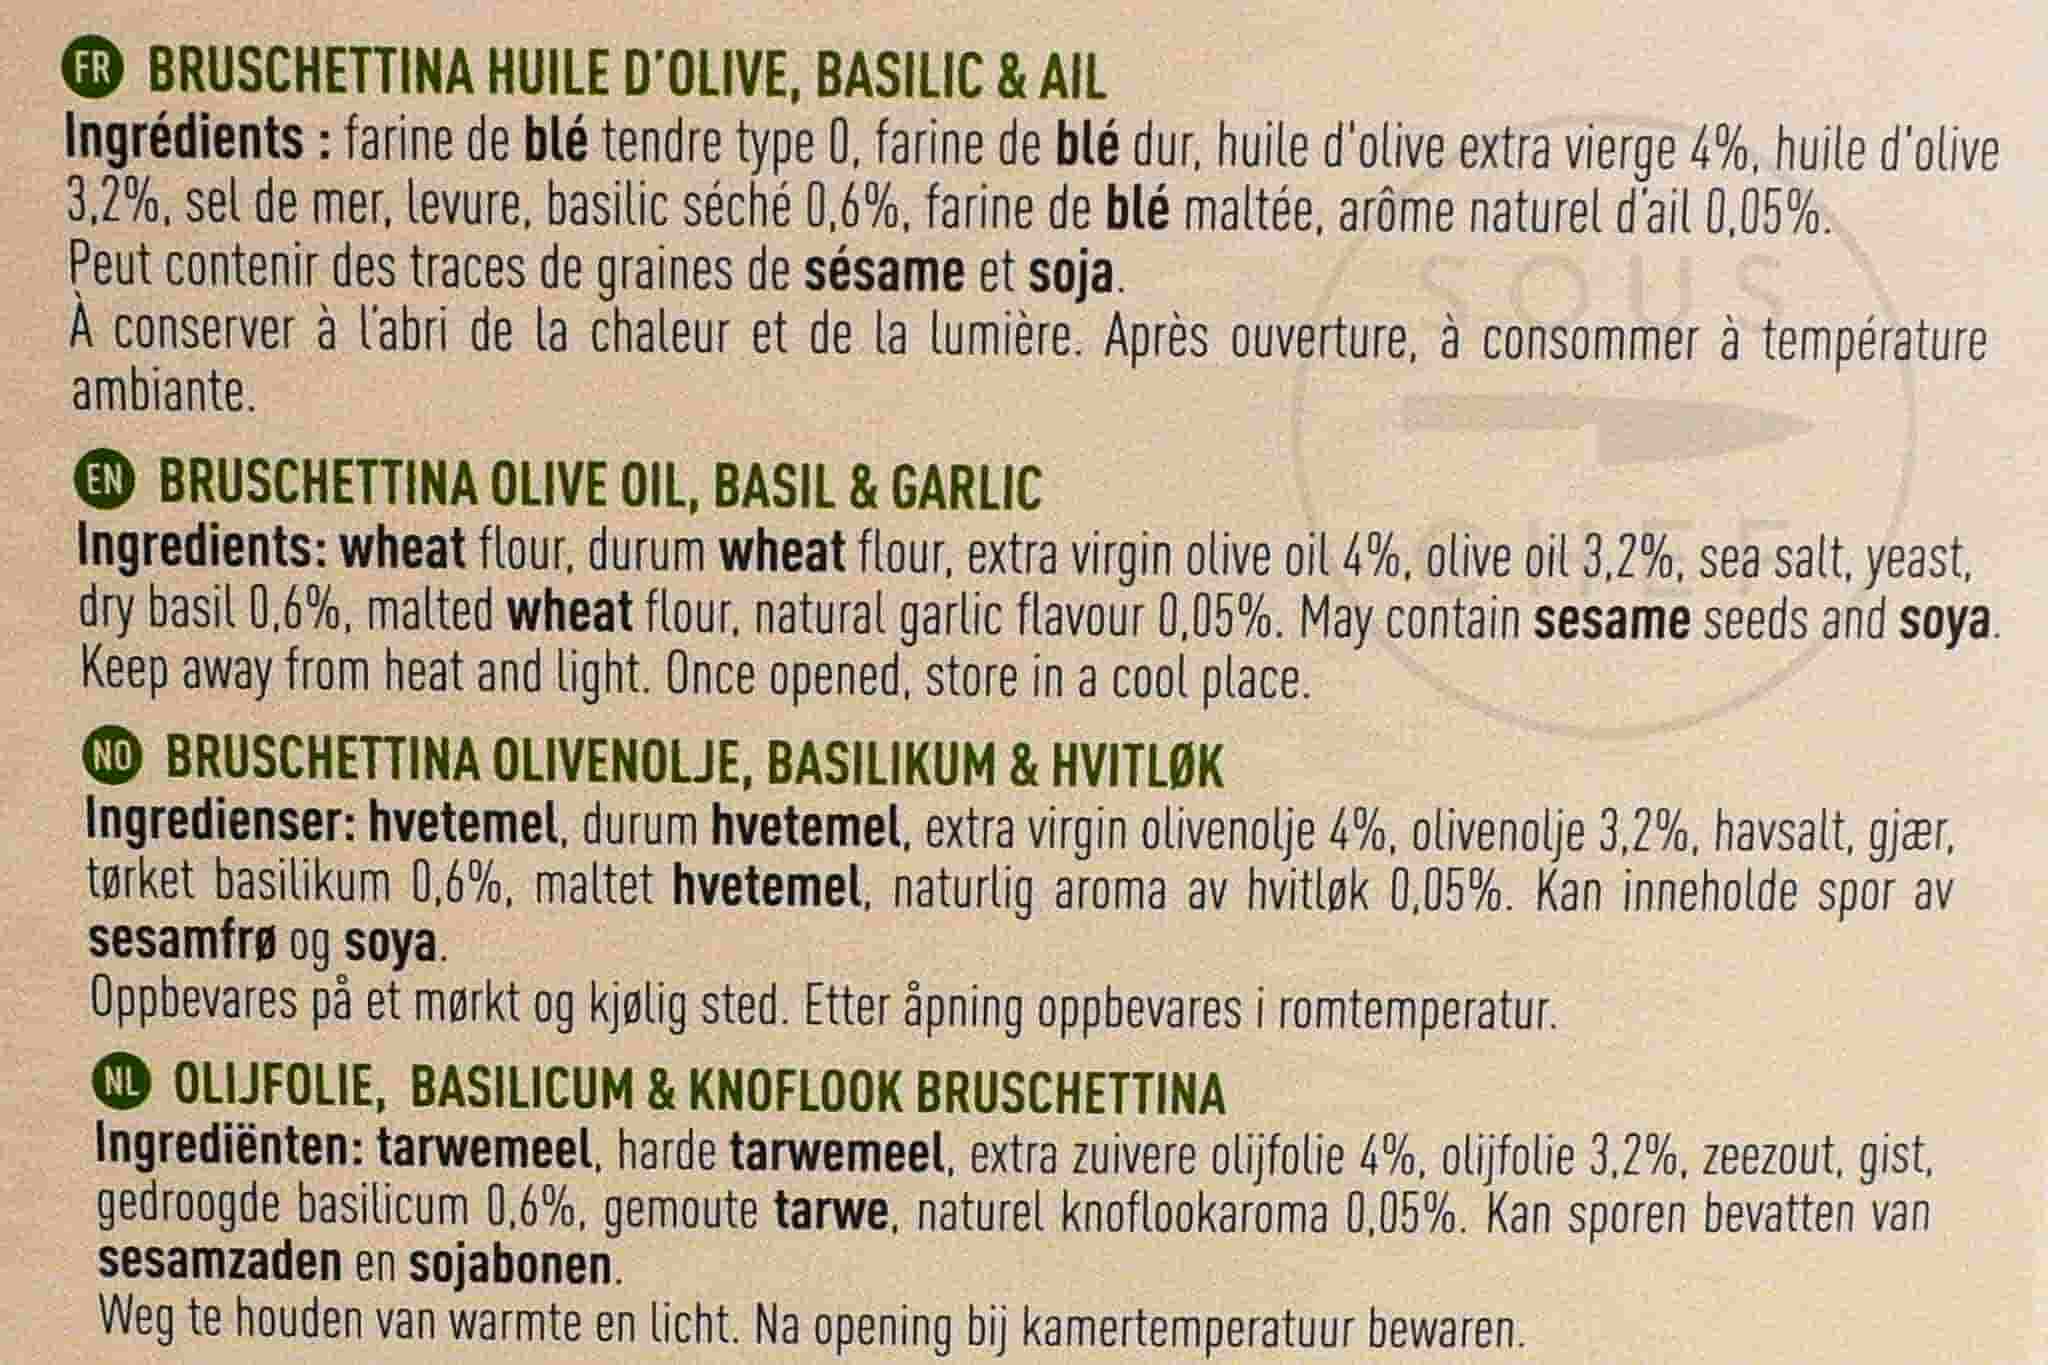 Maison Bremond Bruschettina With Olive Oil, Garlic & Basil 80g Ingredients